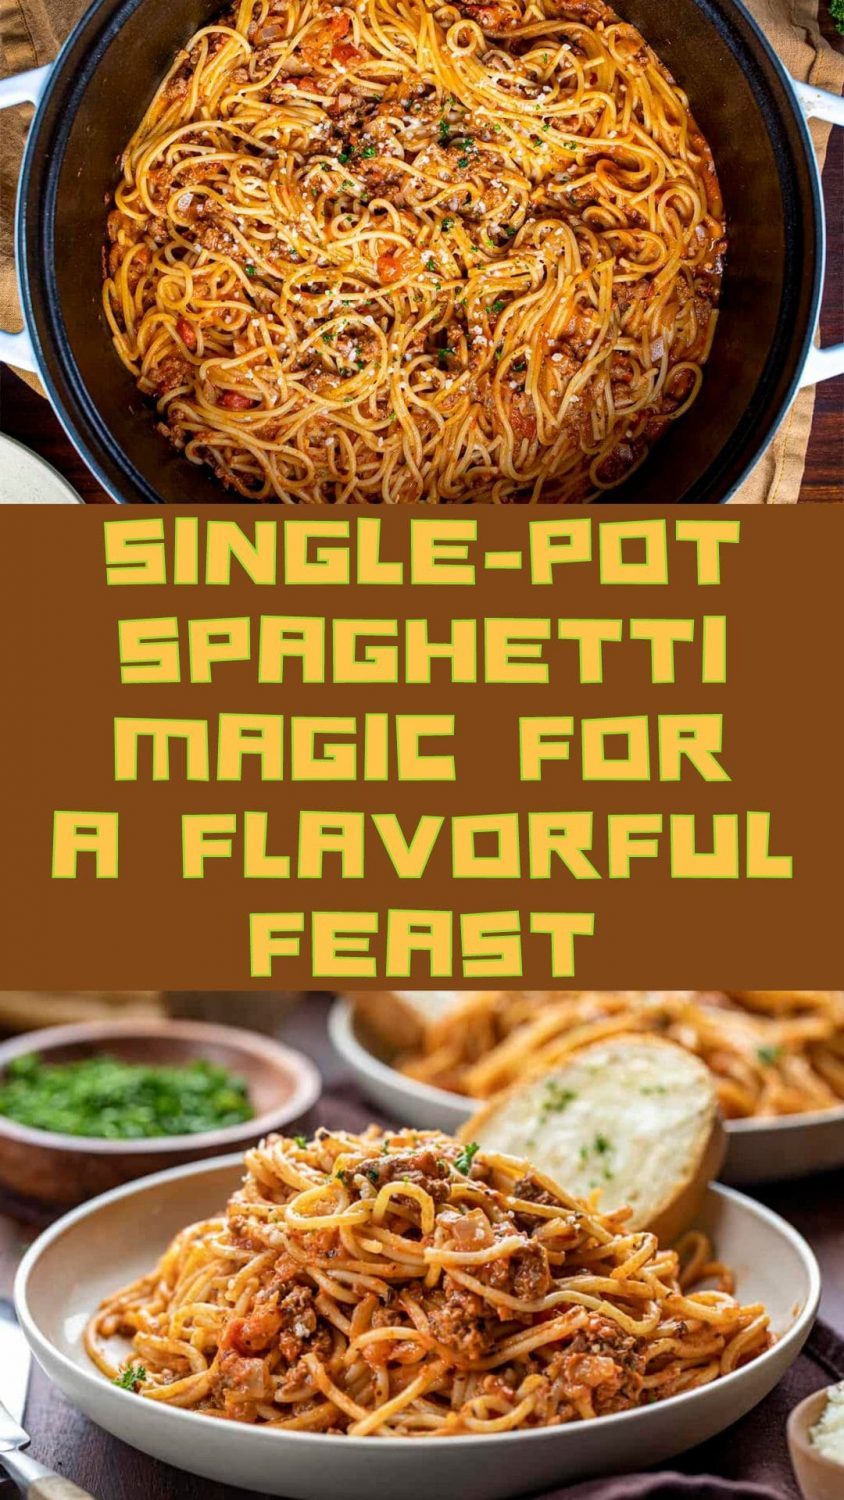 Single-Pot Spaghetti Magic for a Flavorful Feast